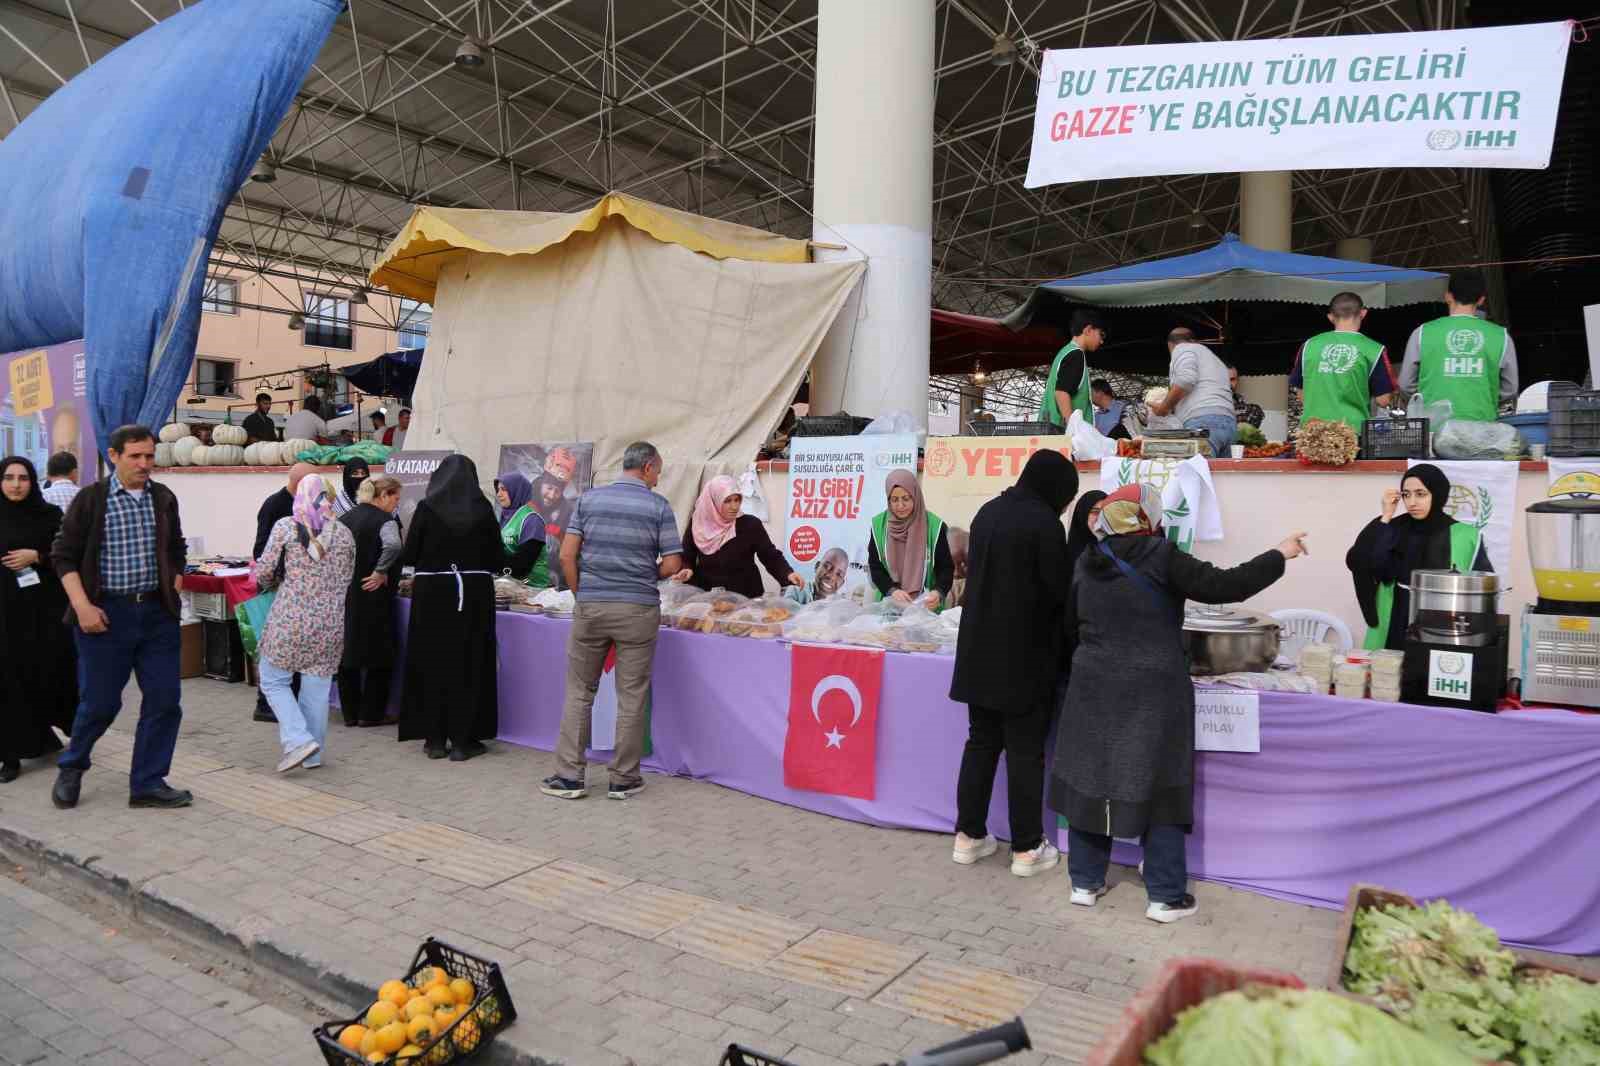 Bursa’da bu tezgahın geliri Gazze’ye bağışlandı